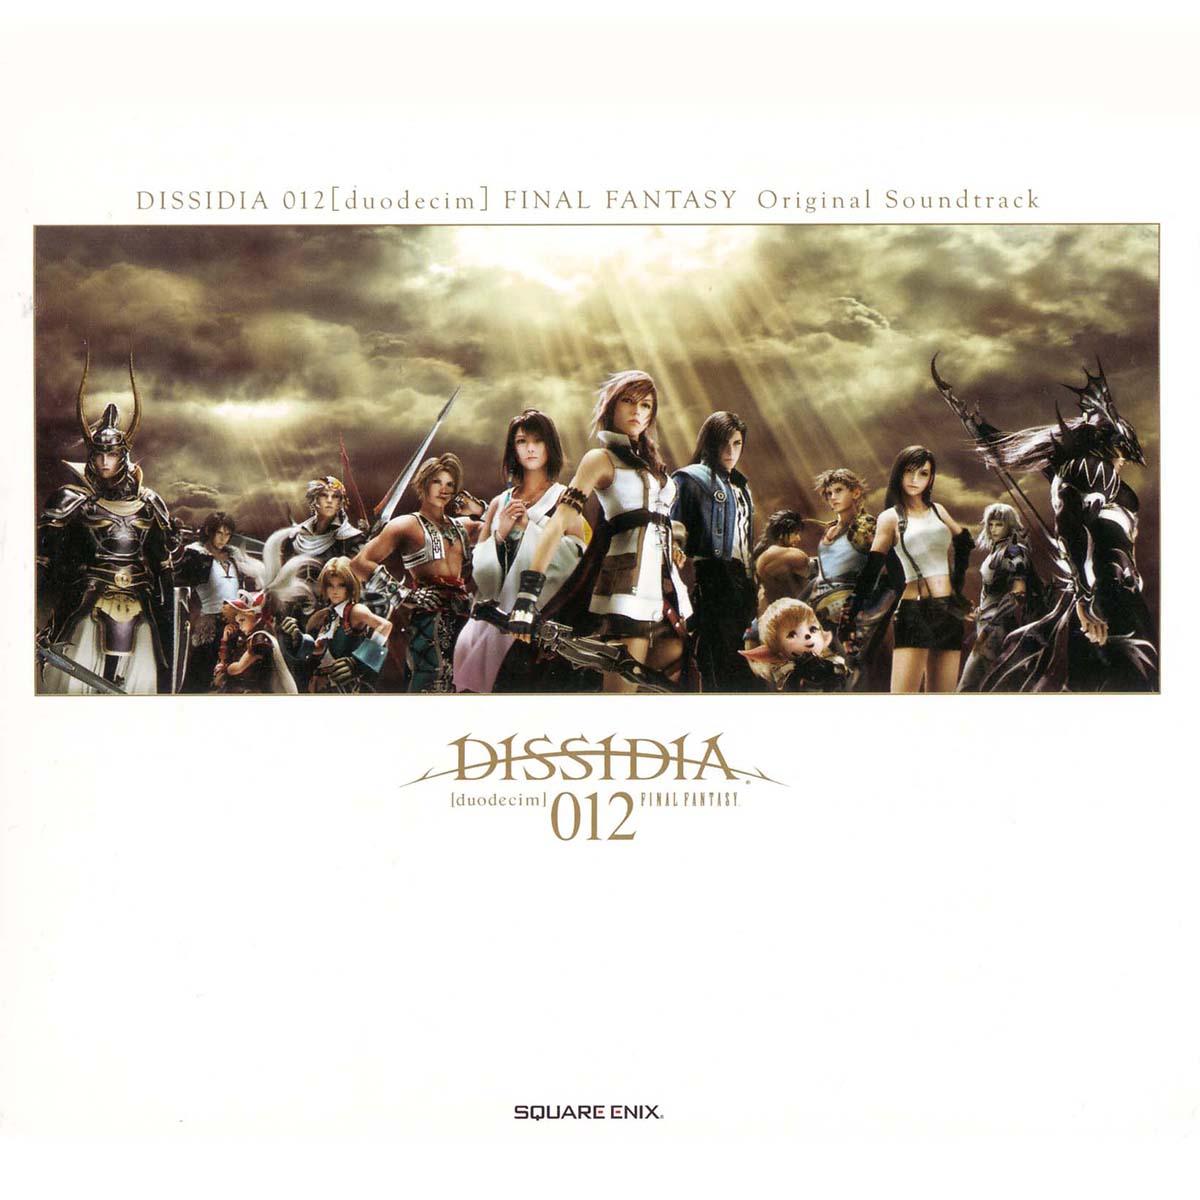 Dissidia 012 [duodecim] Final Fantasy Original Soundtrack